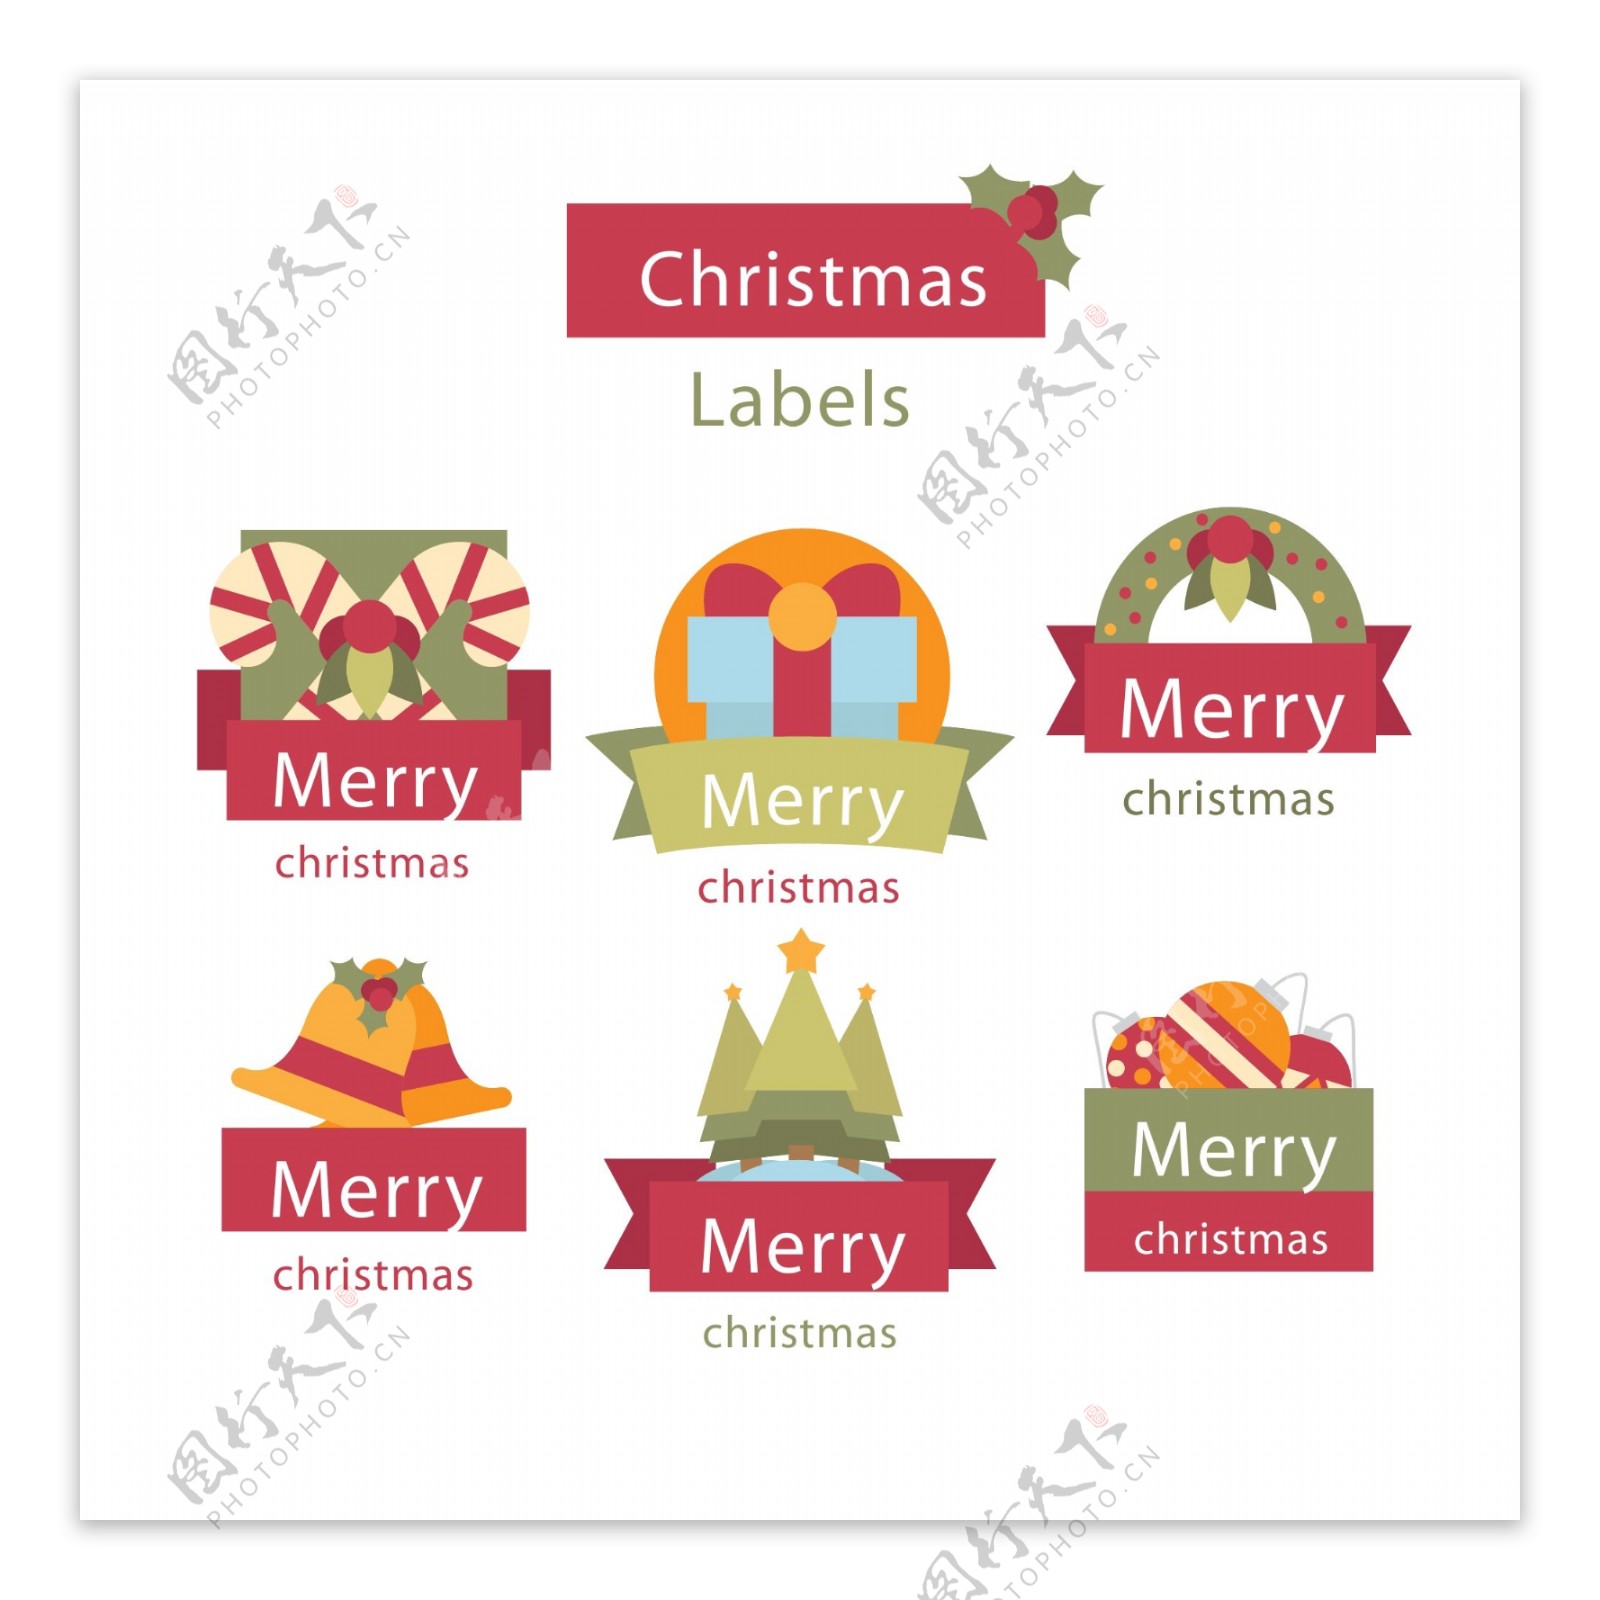 彩色英文的圣诞标签素材